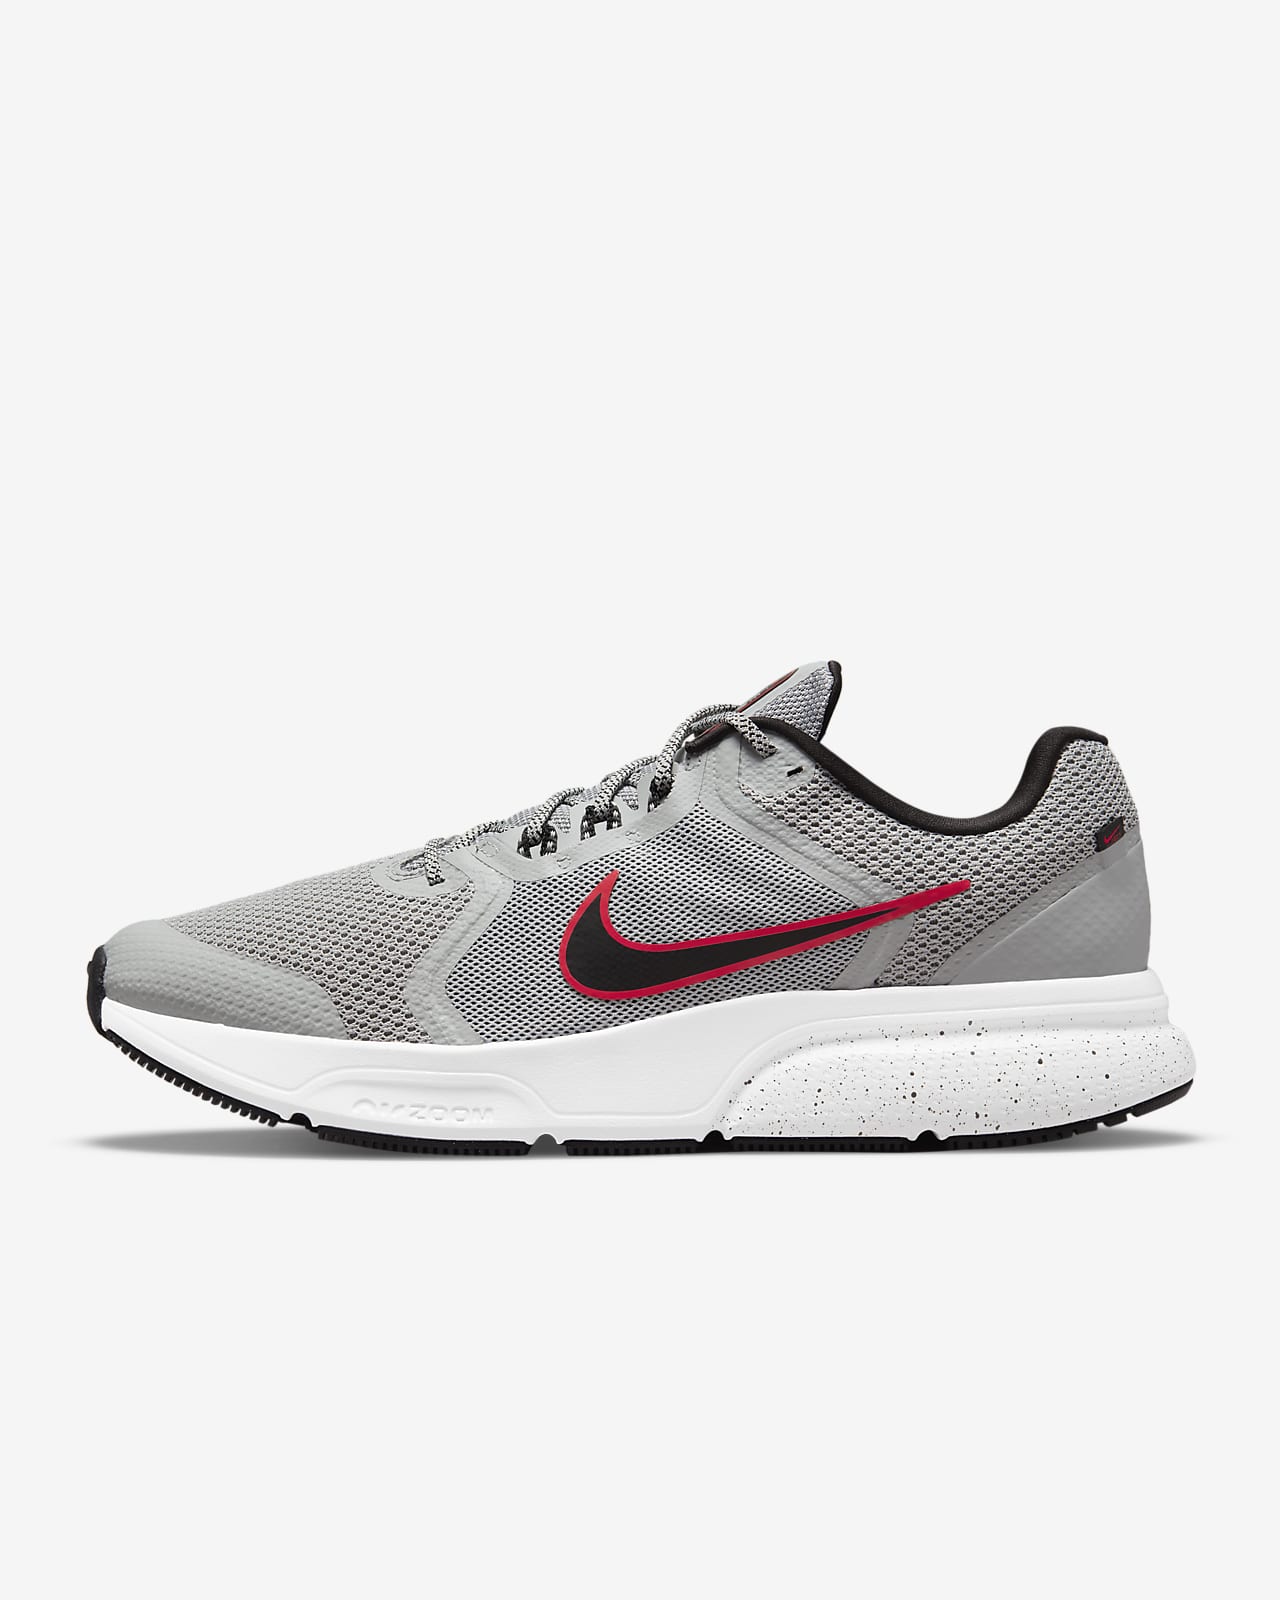 Nike Zoom Span Men's Running Shoes.